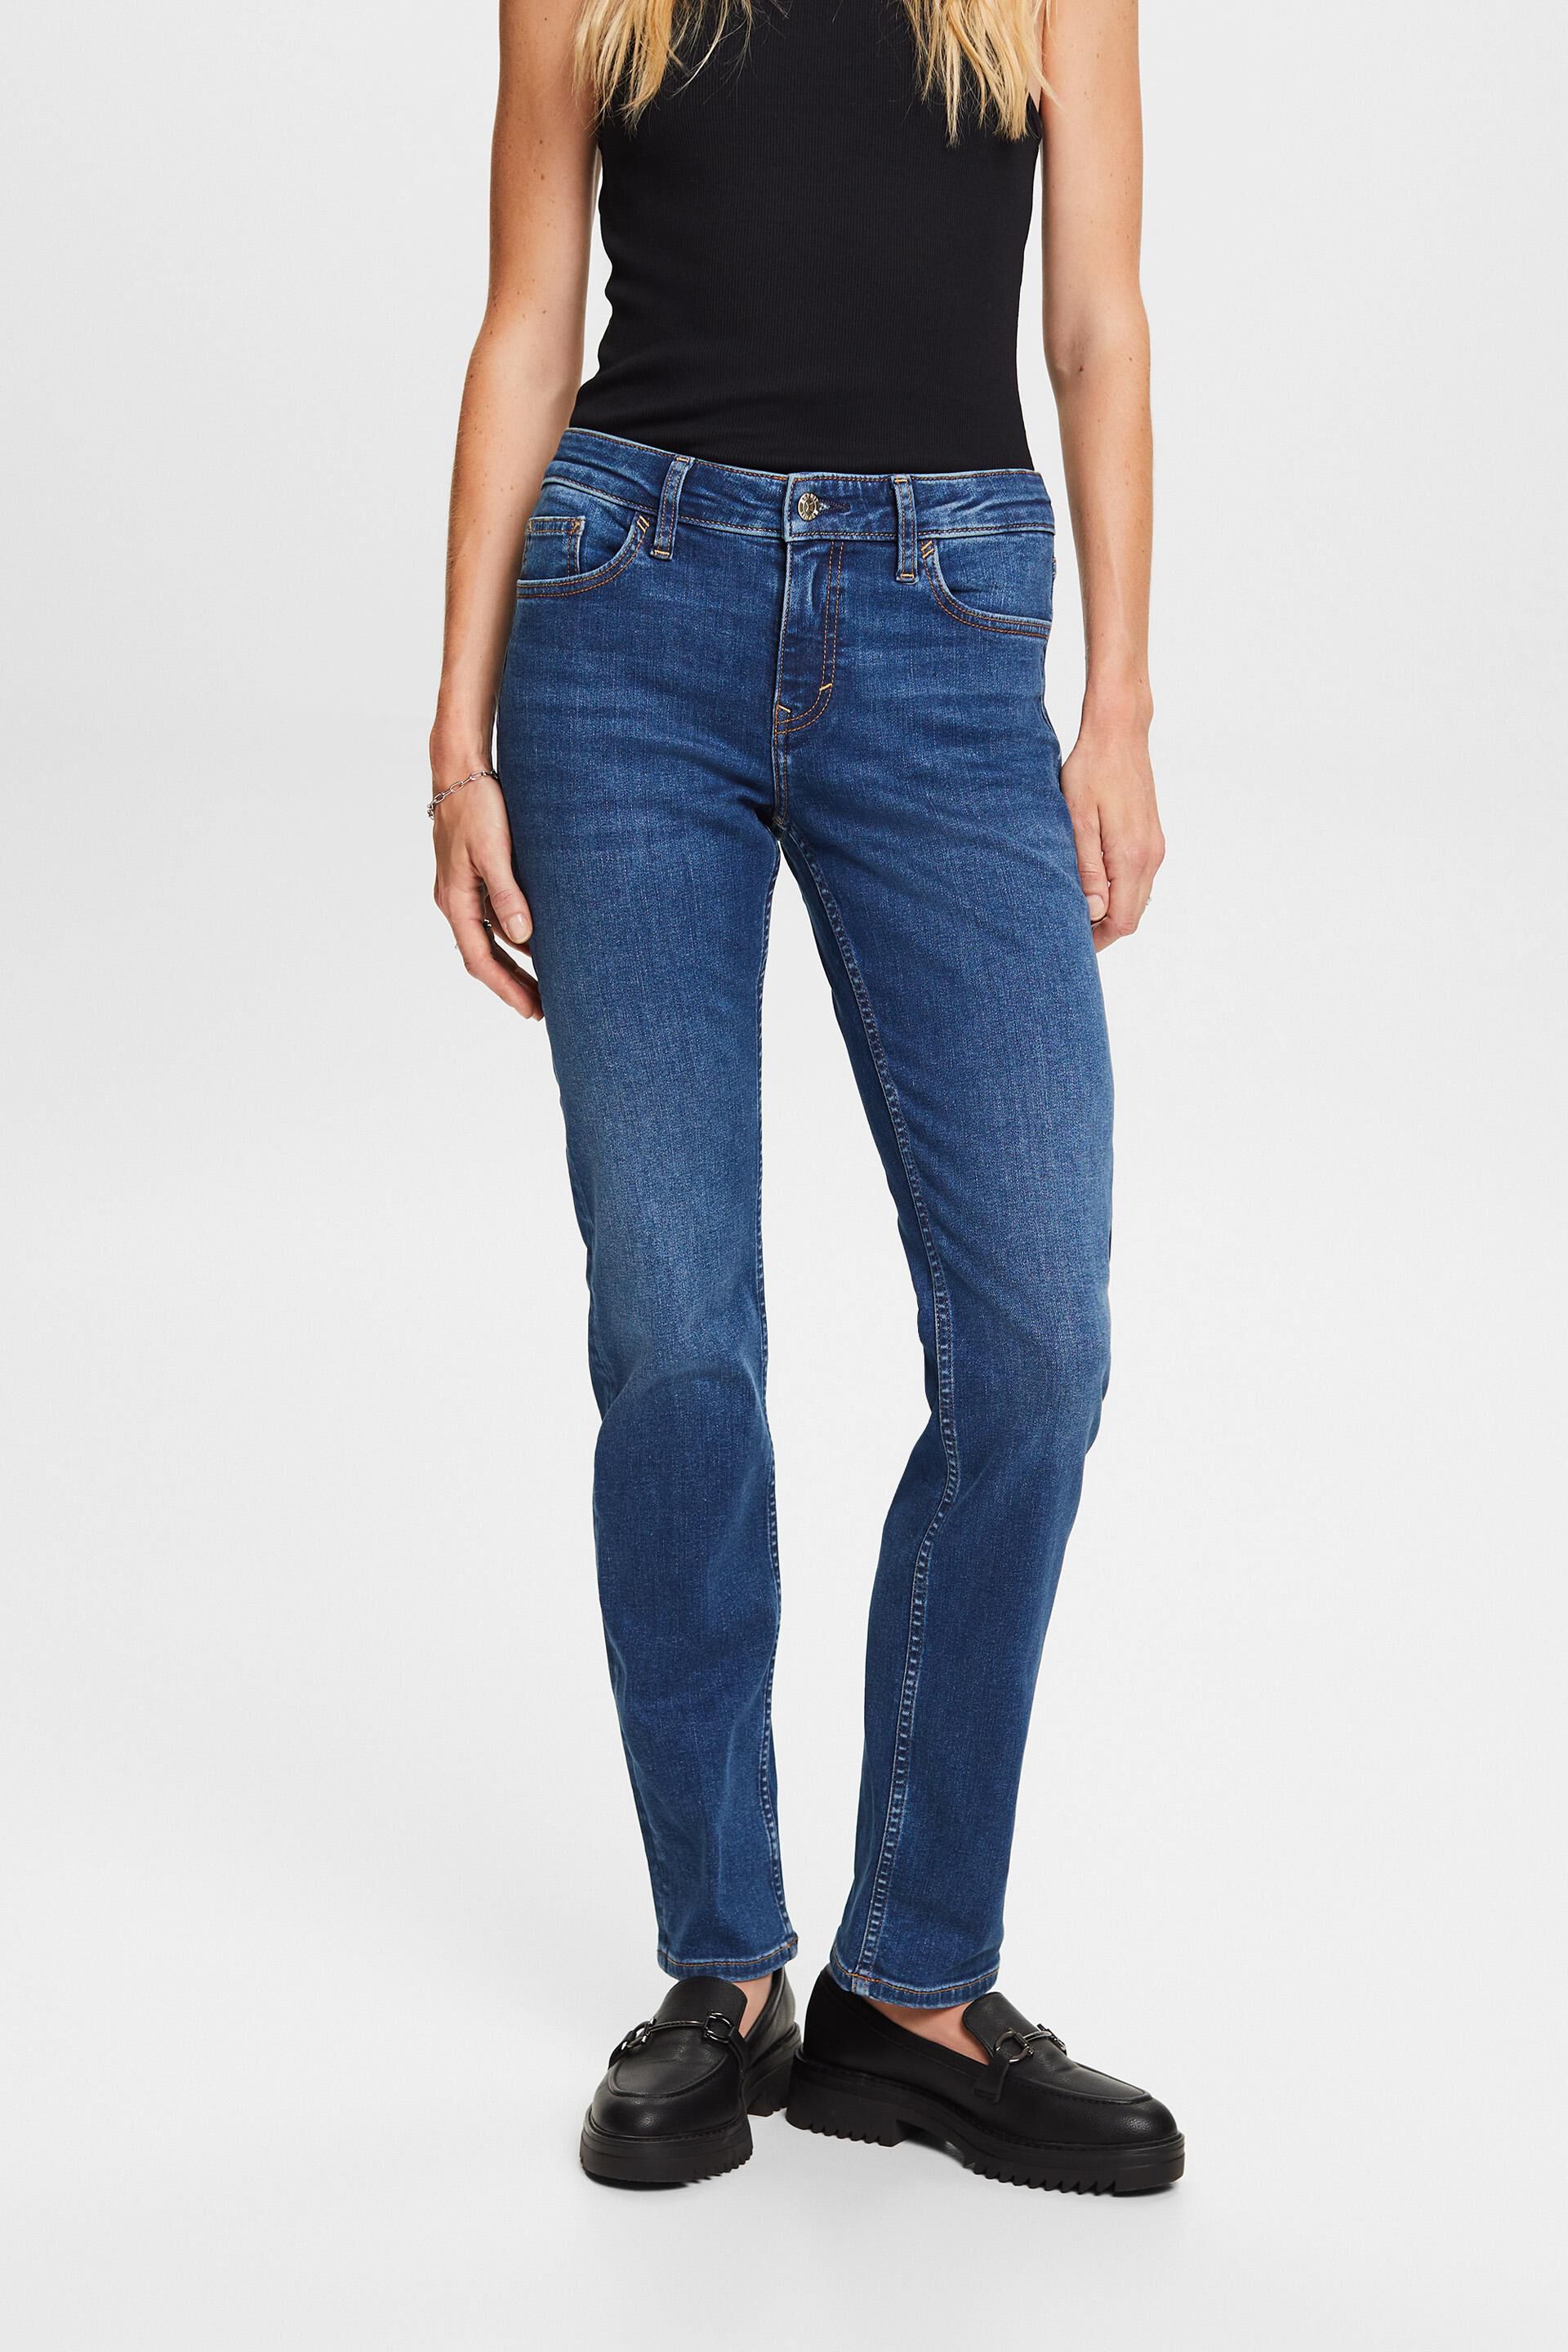 Esprit blend cotton leg stretch Straight jeans,